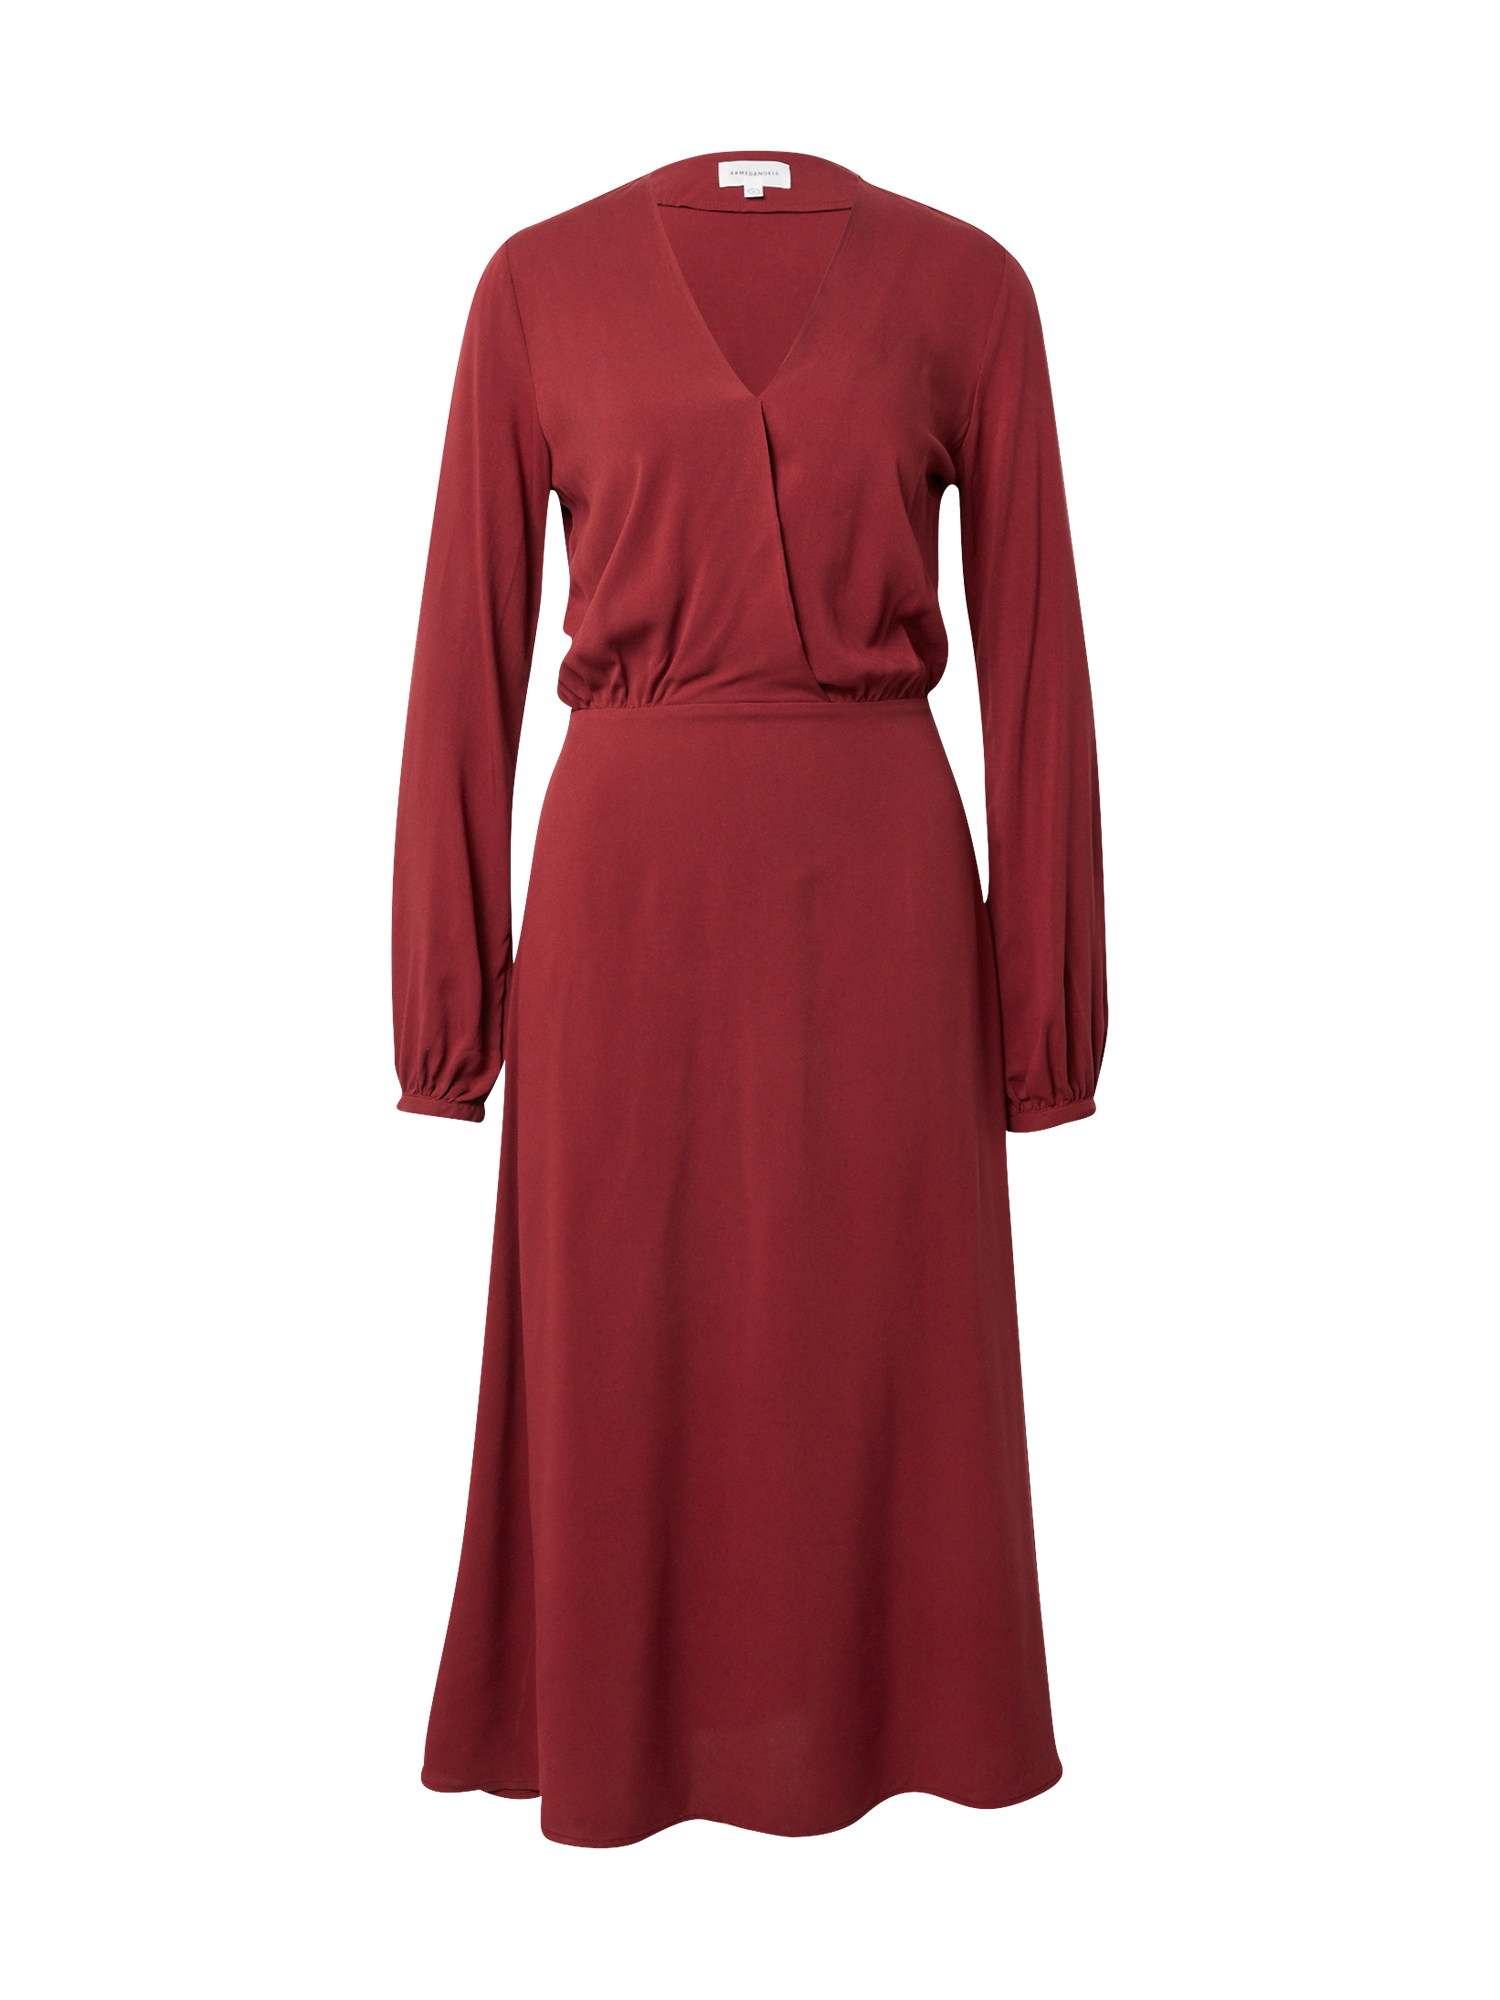 Odzież Kobiety ARMEDANGELS Sukienka Aleixa w kolorze Rubinowo-Czerwonym 